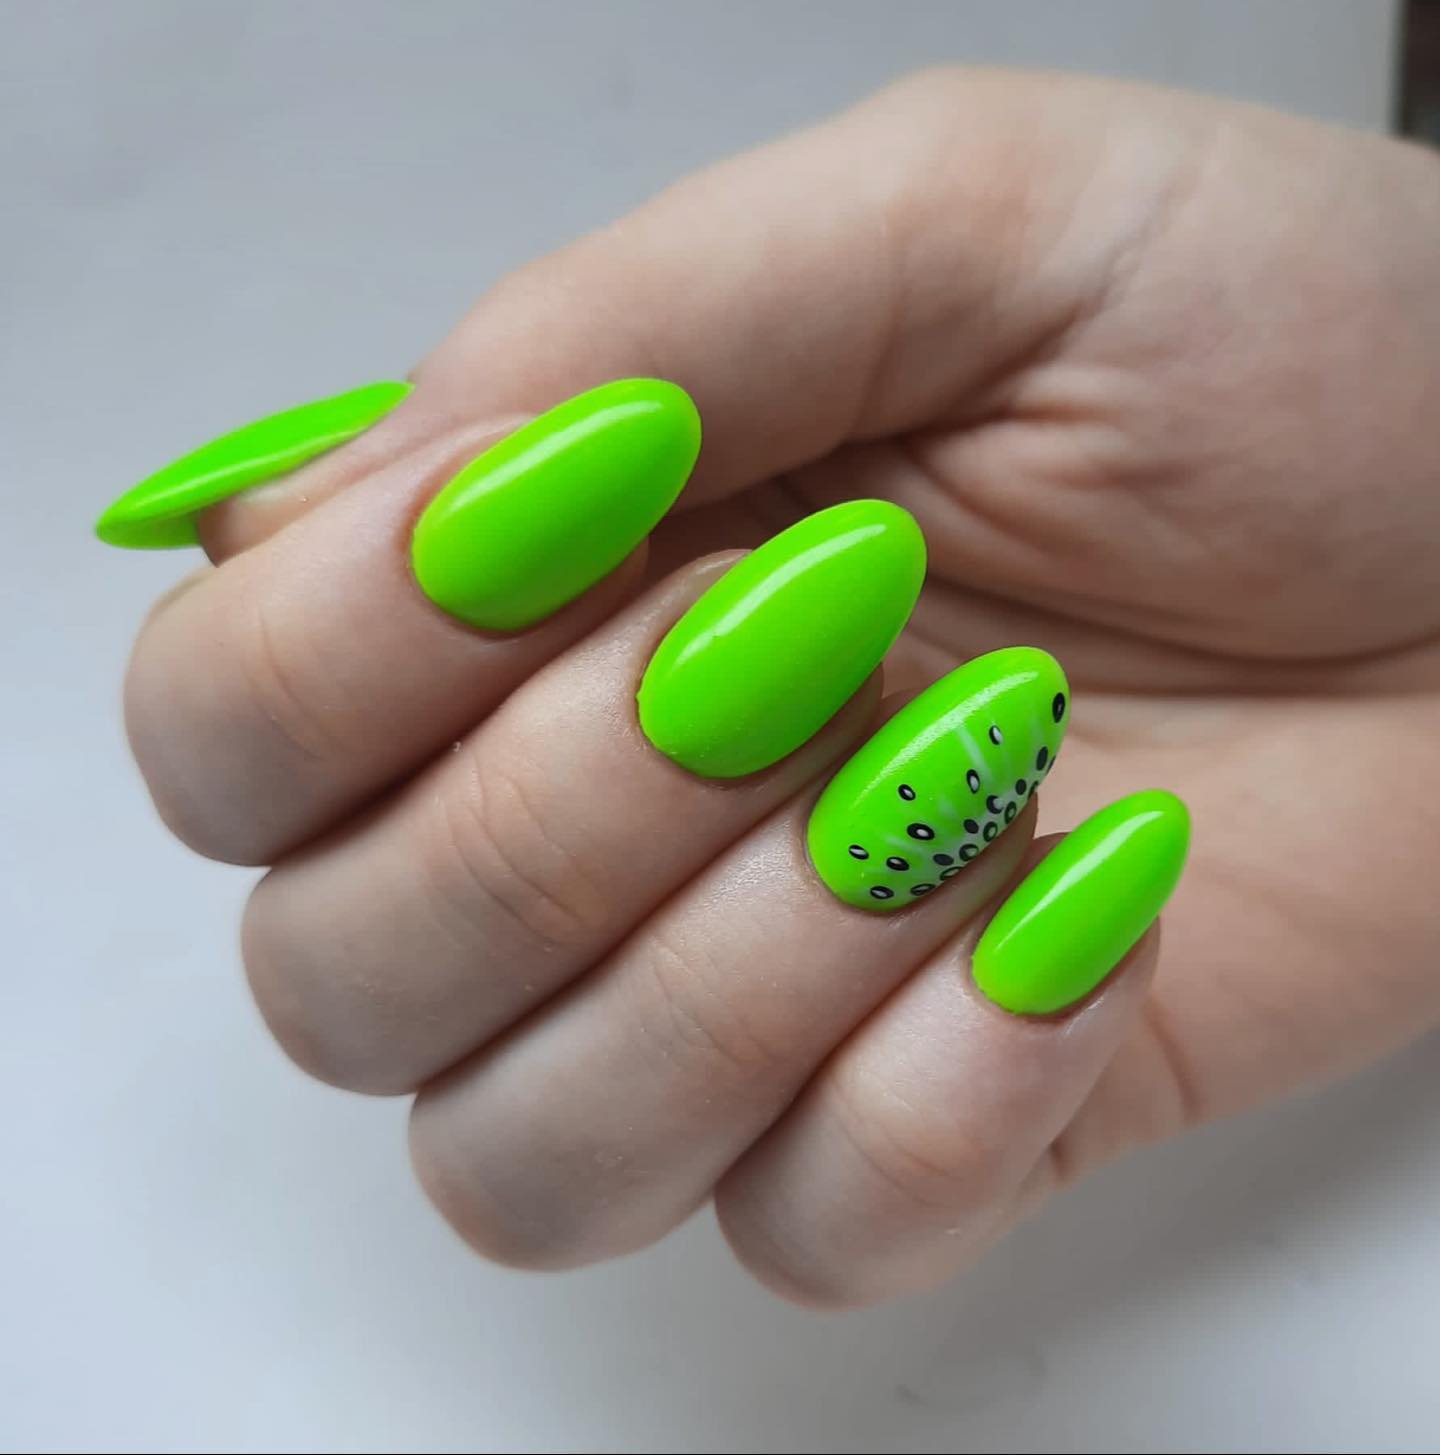 Zbliżenie limonkowo-zielonych owalnych paznokci z czarnymi wzorami na palcu serdecznym